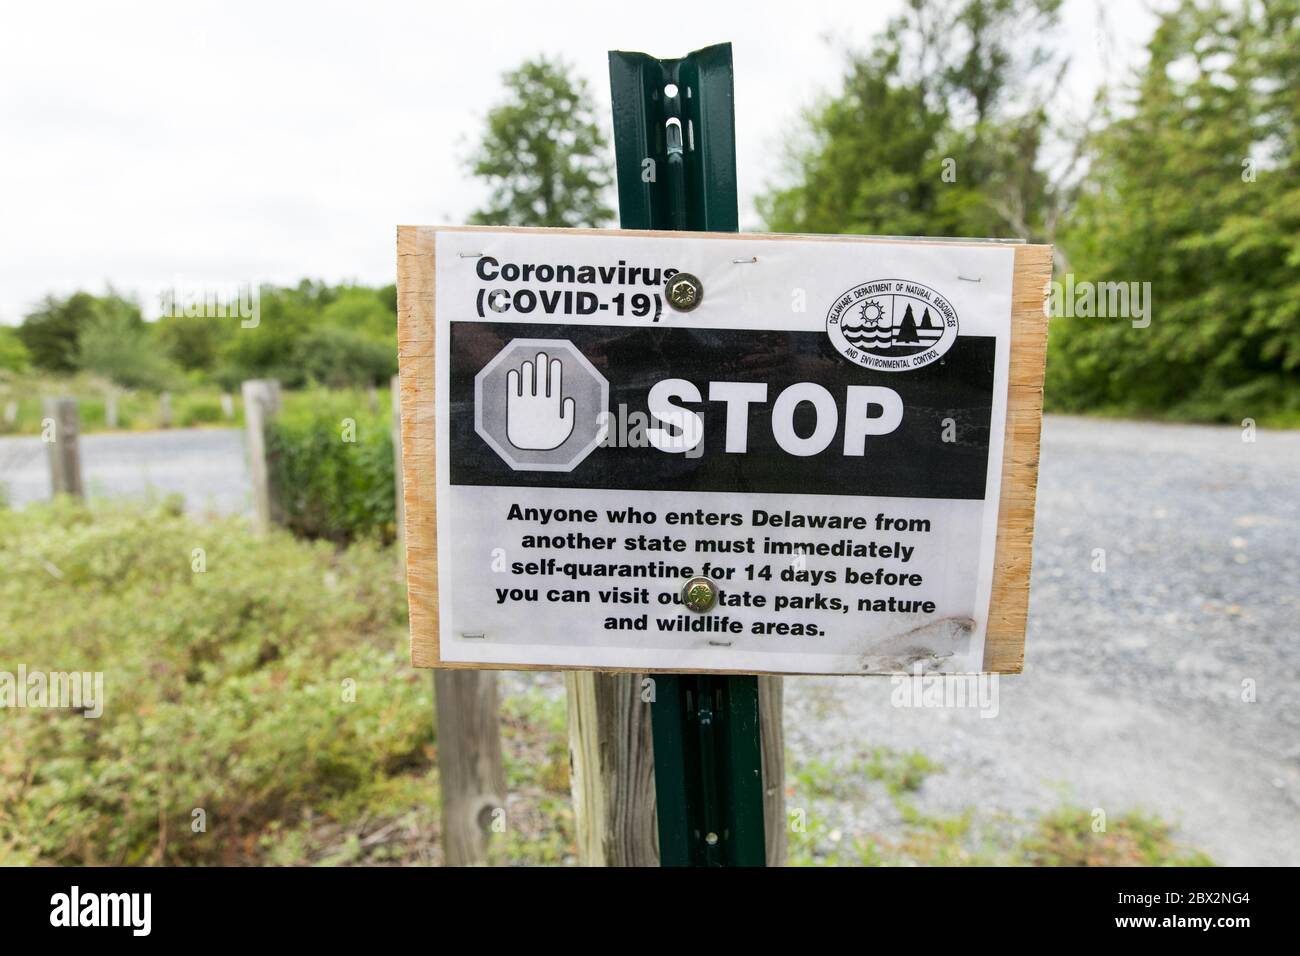 Un panneau informant les voyageurs entrant dans le Delaware qu'ils doivent se mettre en quarantaine pendant 14 jours en raison de la pandémie Covid-19. Banque D'Images